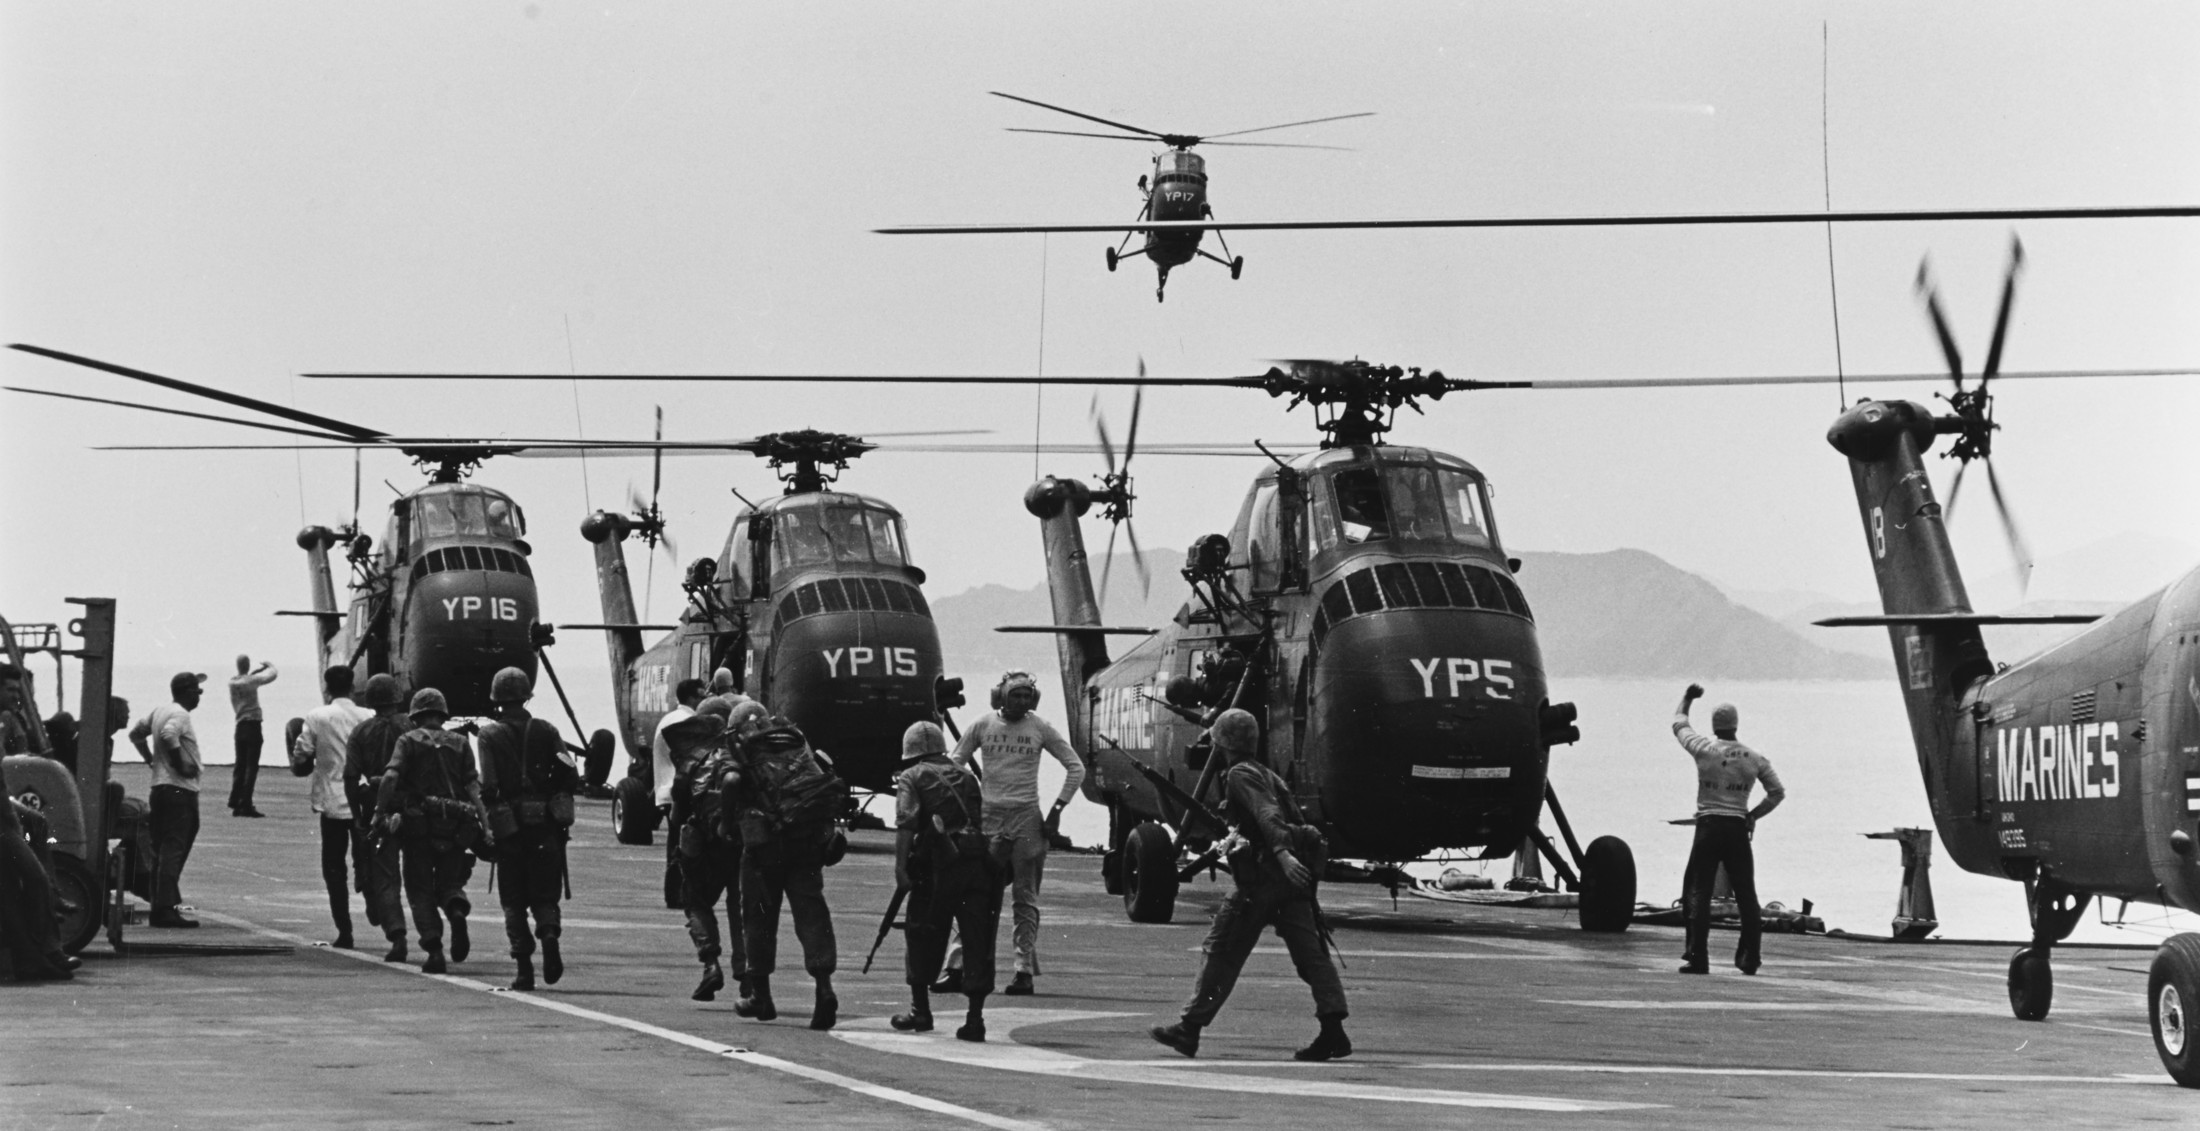 lph-2 uss iwo jima class amphibious assault ship landing platform helicopter us navy 06 hmm-163 vietnam war